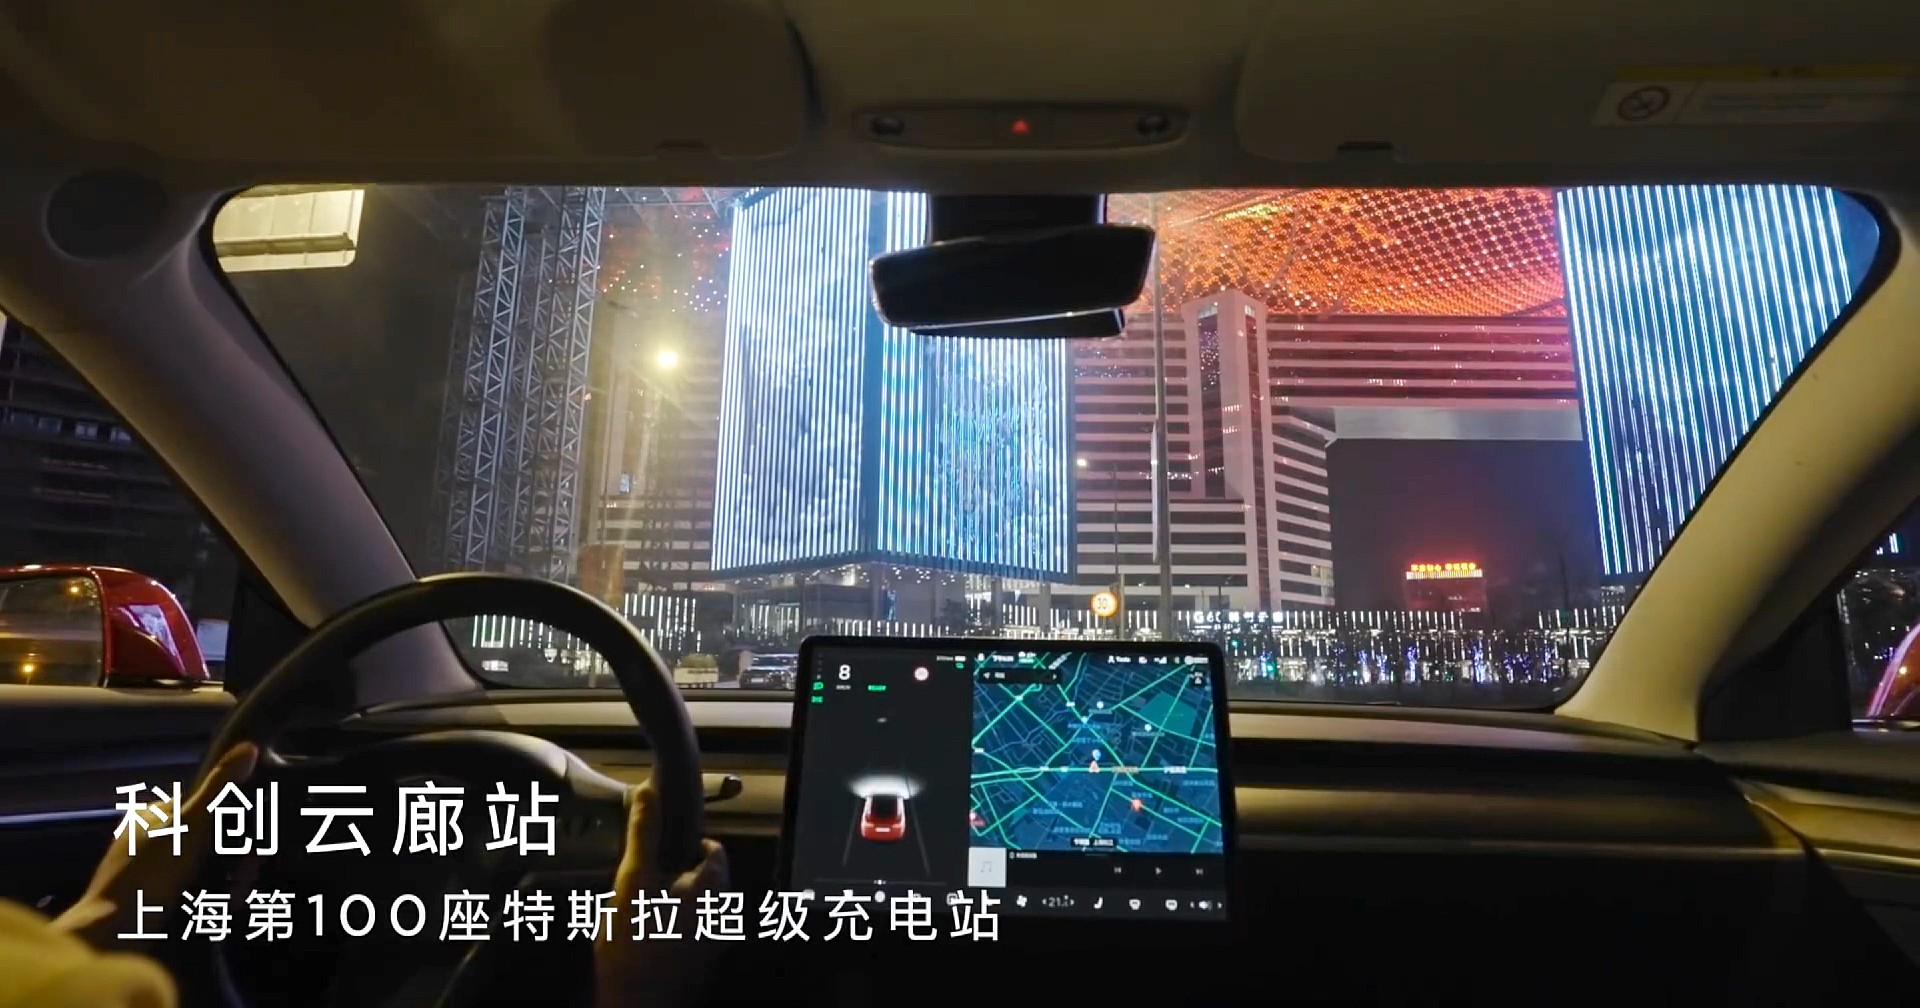 Tesla завершила строительство 100 станций Supercharger в Шанхае